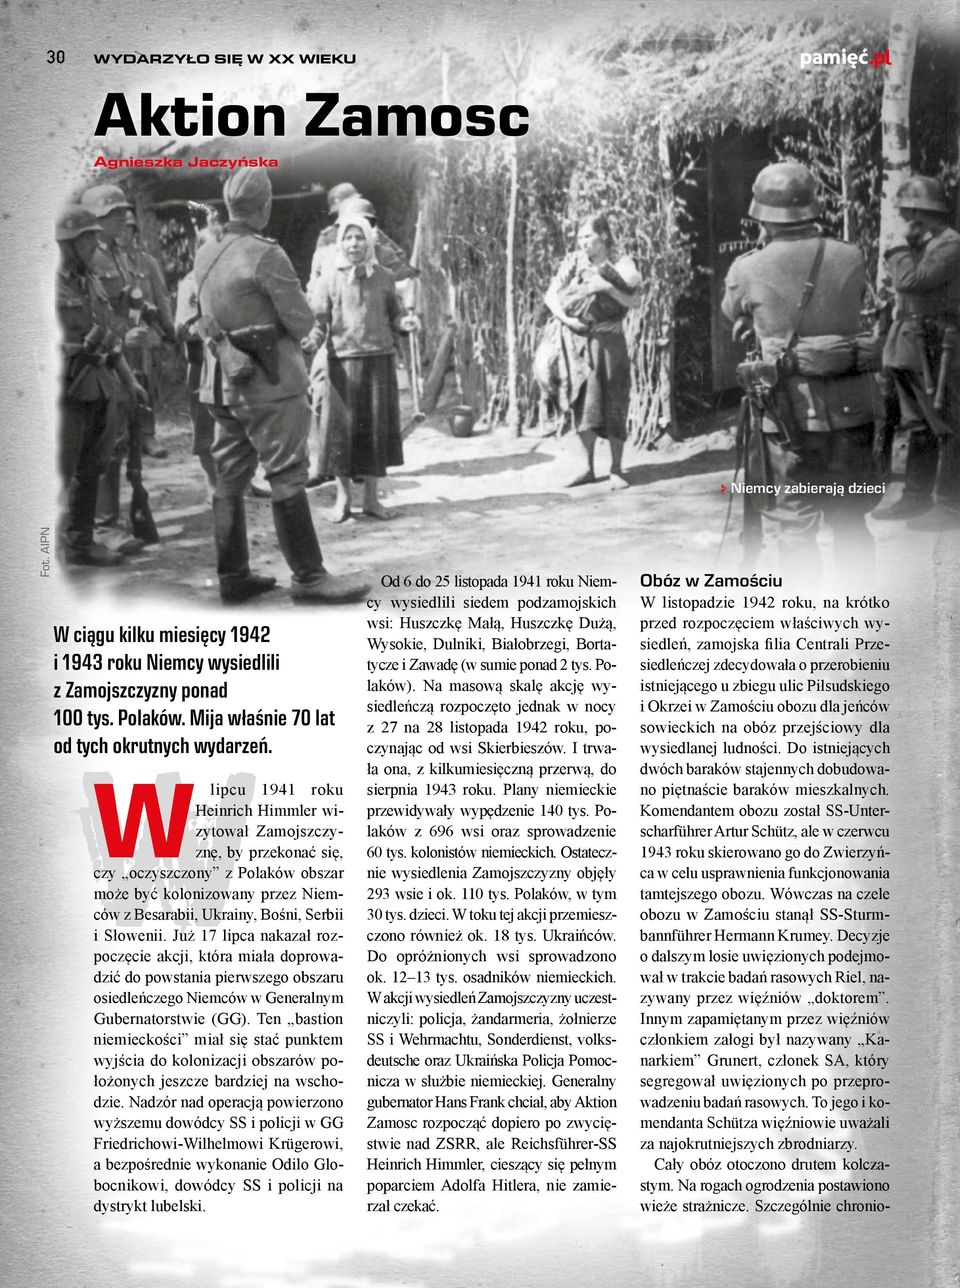 W lipcu 1941 roku Heinrich Himmler wizytował Zamojszczyznę, by przekonać się, czy oczyszczony z Polaków obszar może być kolonizowany przez Niemców z Besarabii, Ukrainy, Bośni, Serbii i Słowenii.